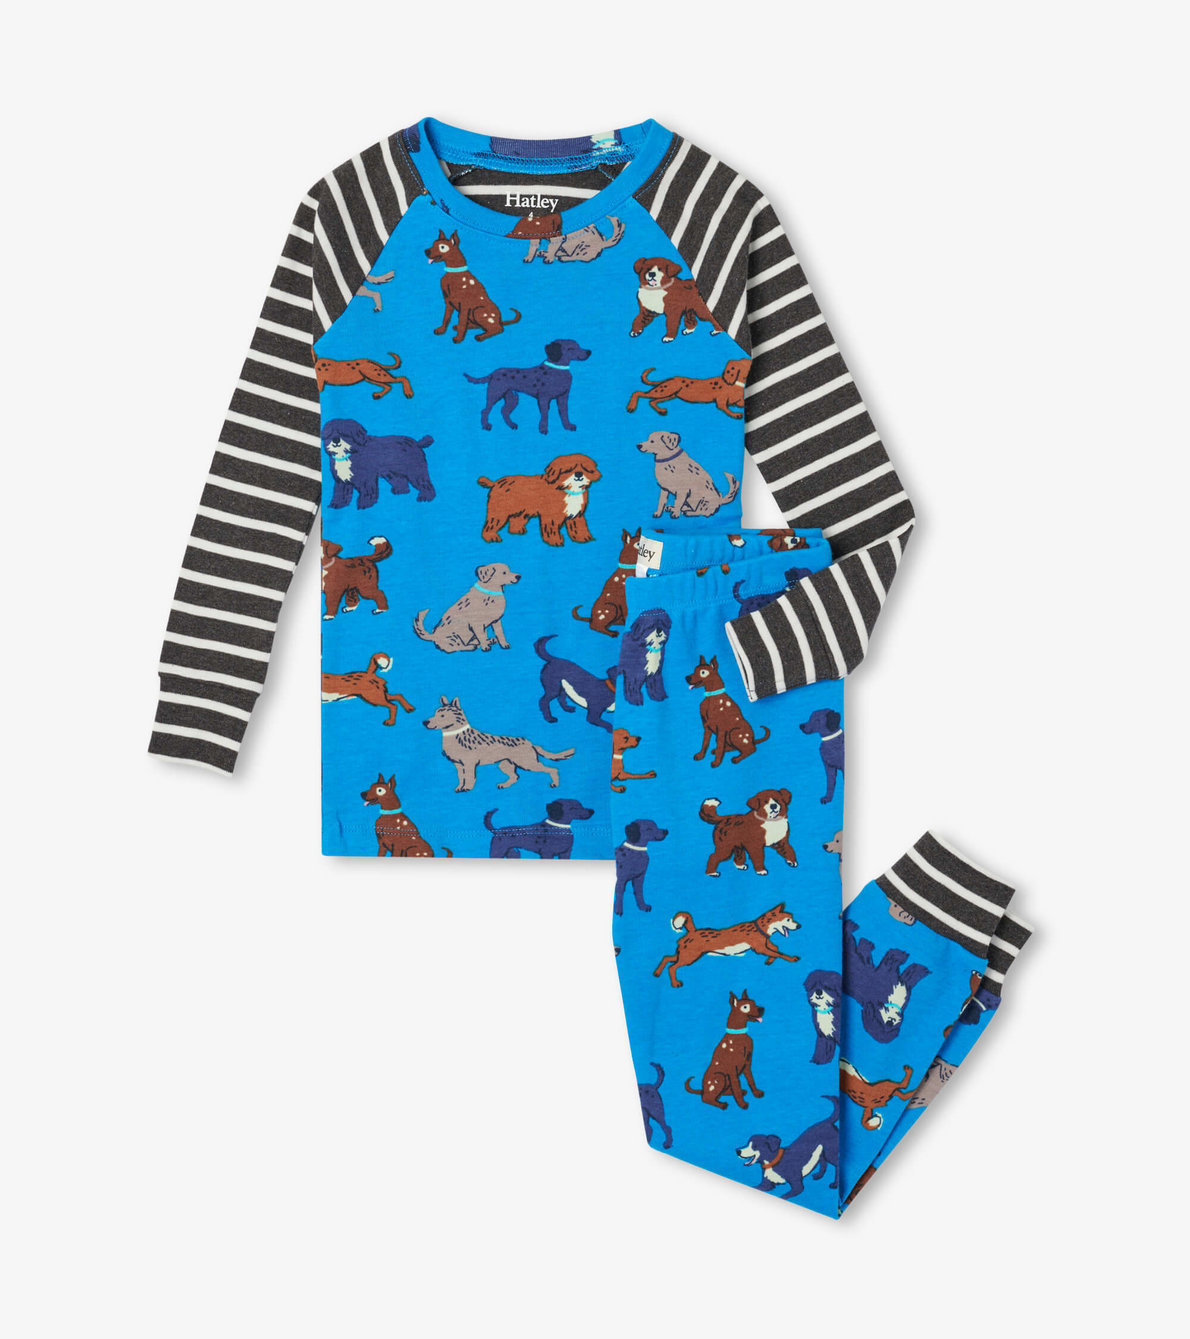 View larger image of Playful Puppies Organic Cotton Raglan Kids Pajama Set